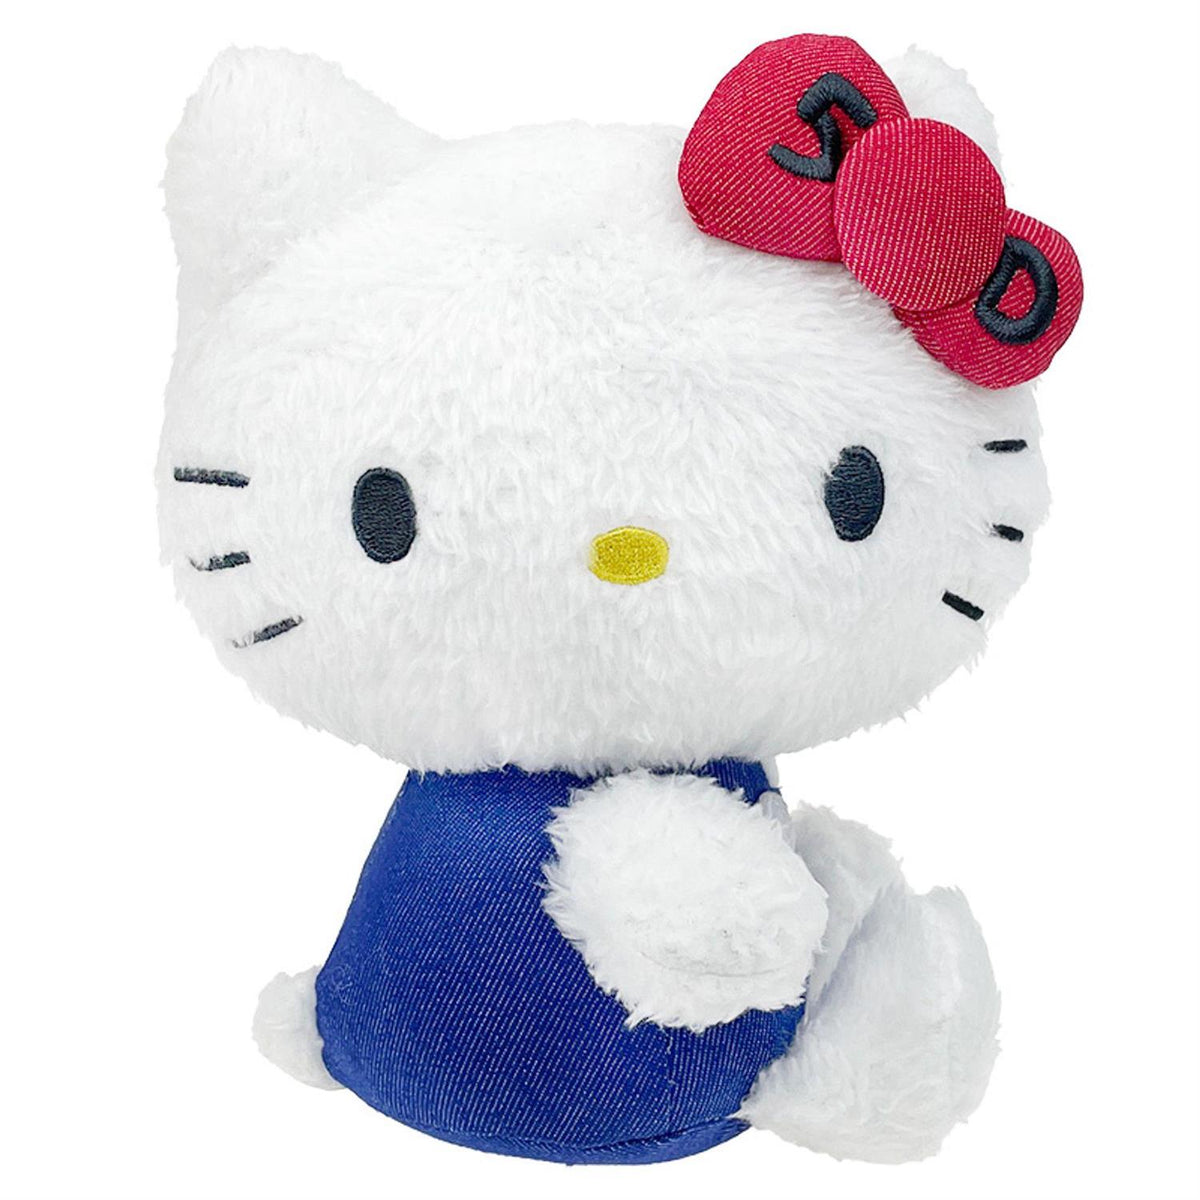 Happy anniversary Hello Kitty! #sanrio #hellokitty #hellokitty50th